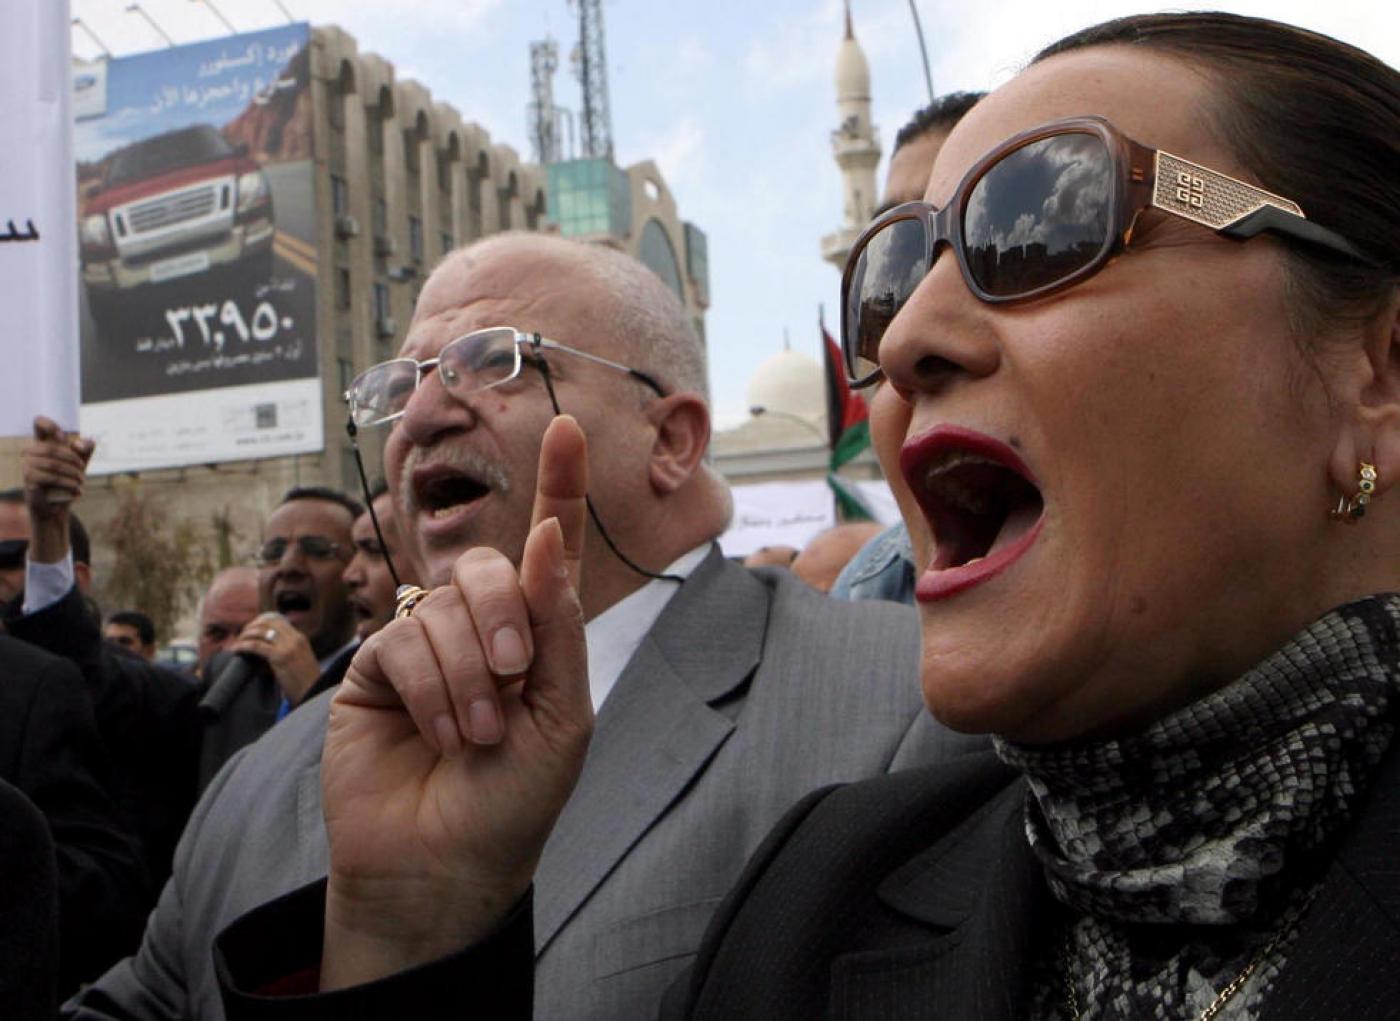 Des journalistes jordaniens manifestent devant le quotidien gouvernemental Al-Rai à Amman pour réclamer des « médias indépendants et libres », le 7 mars 2011 (AFP)